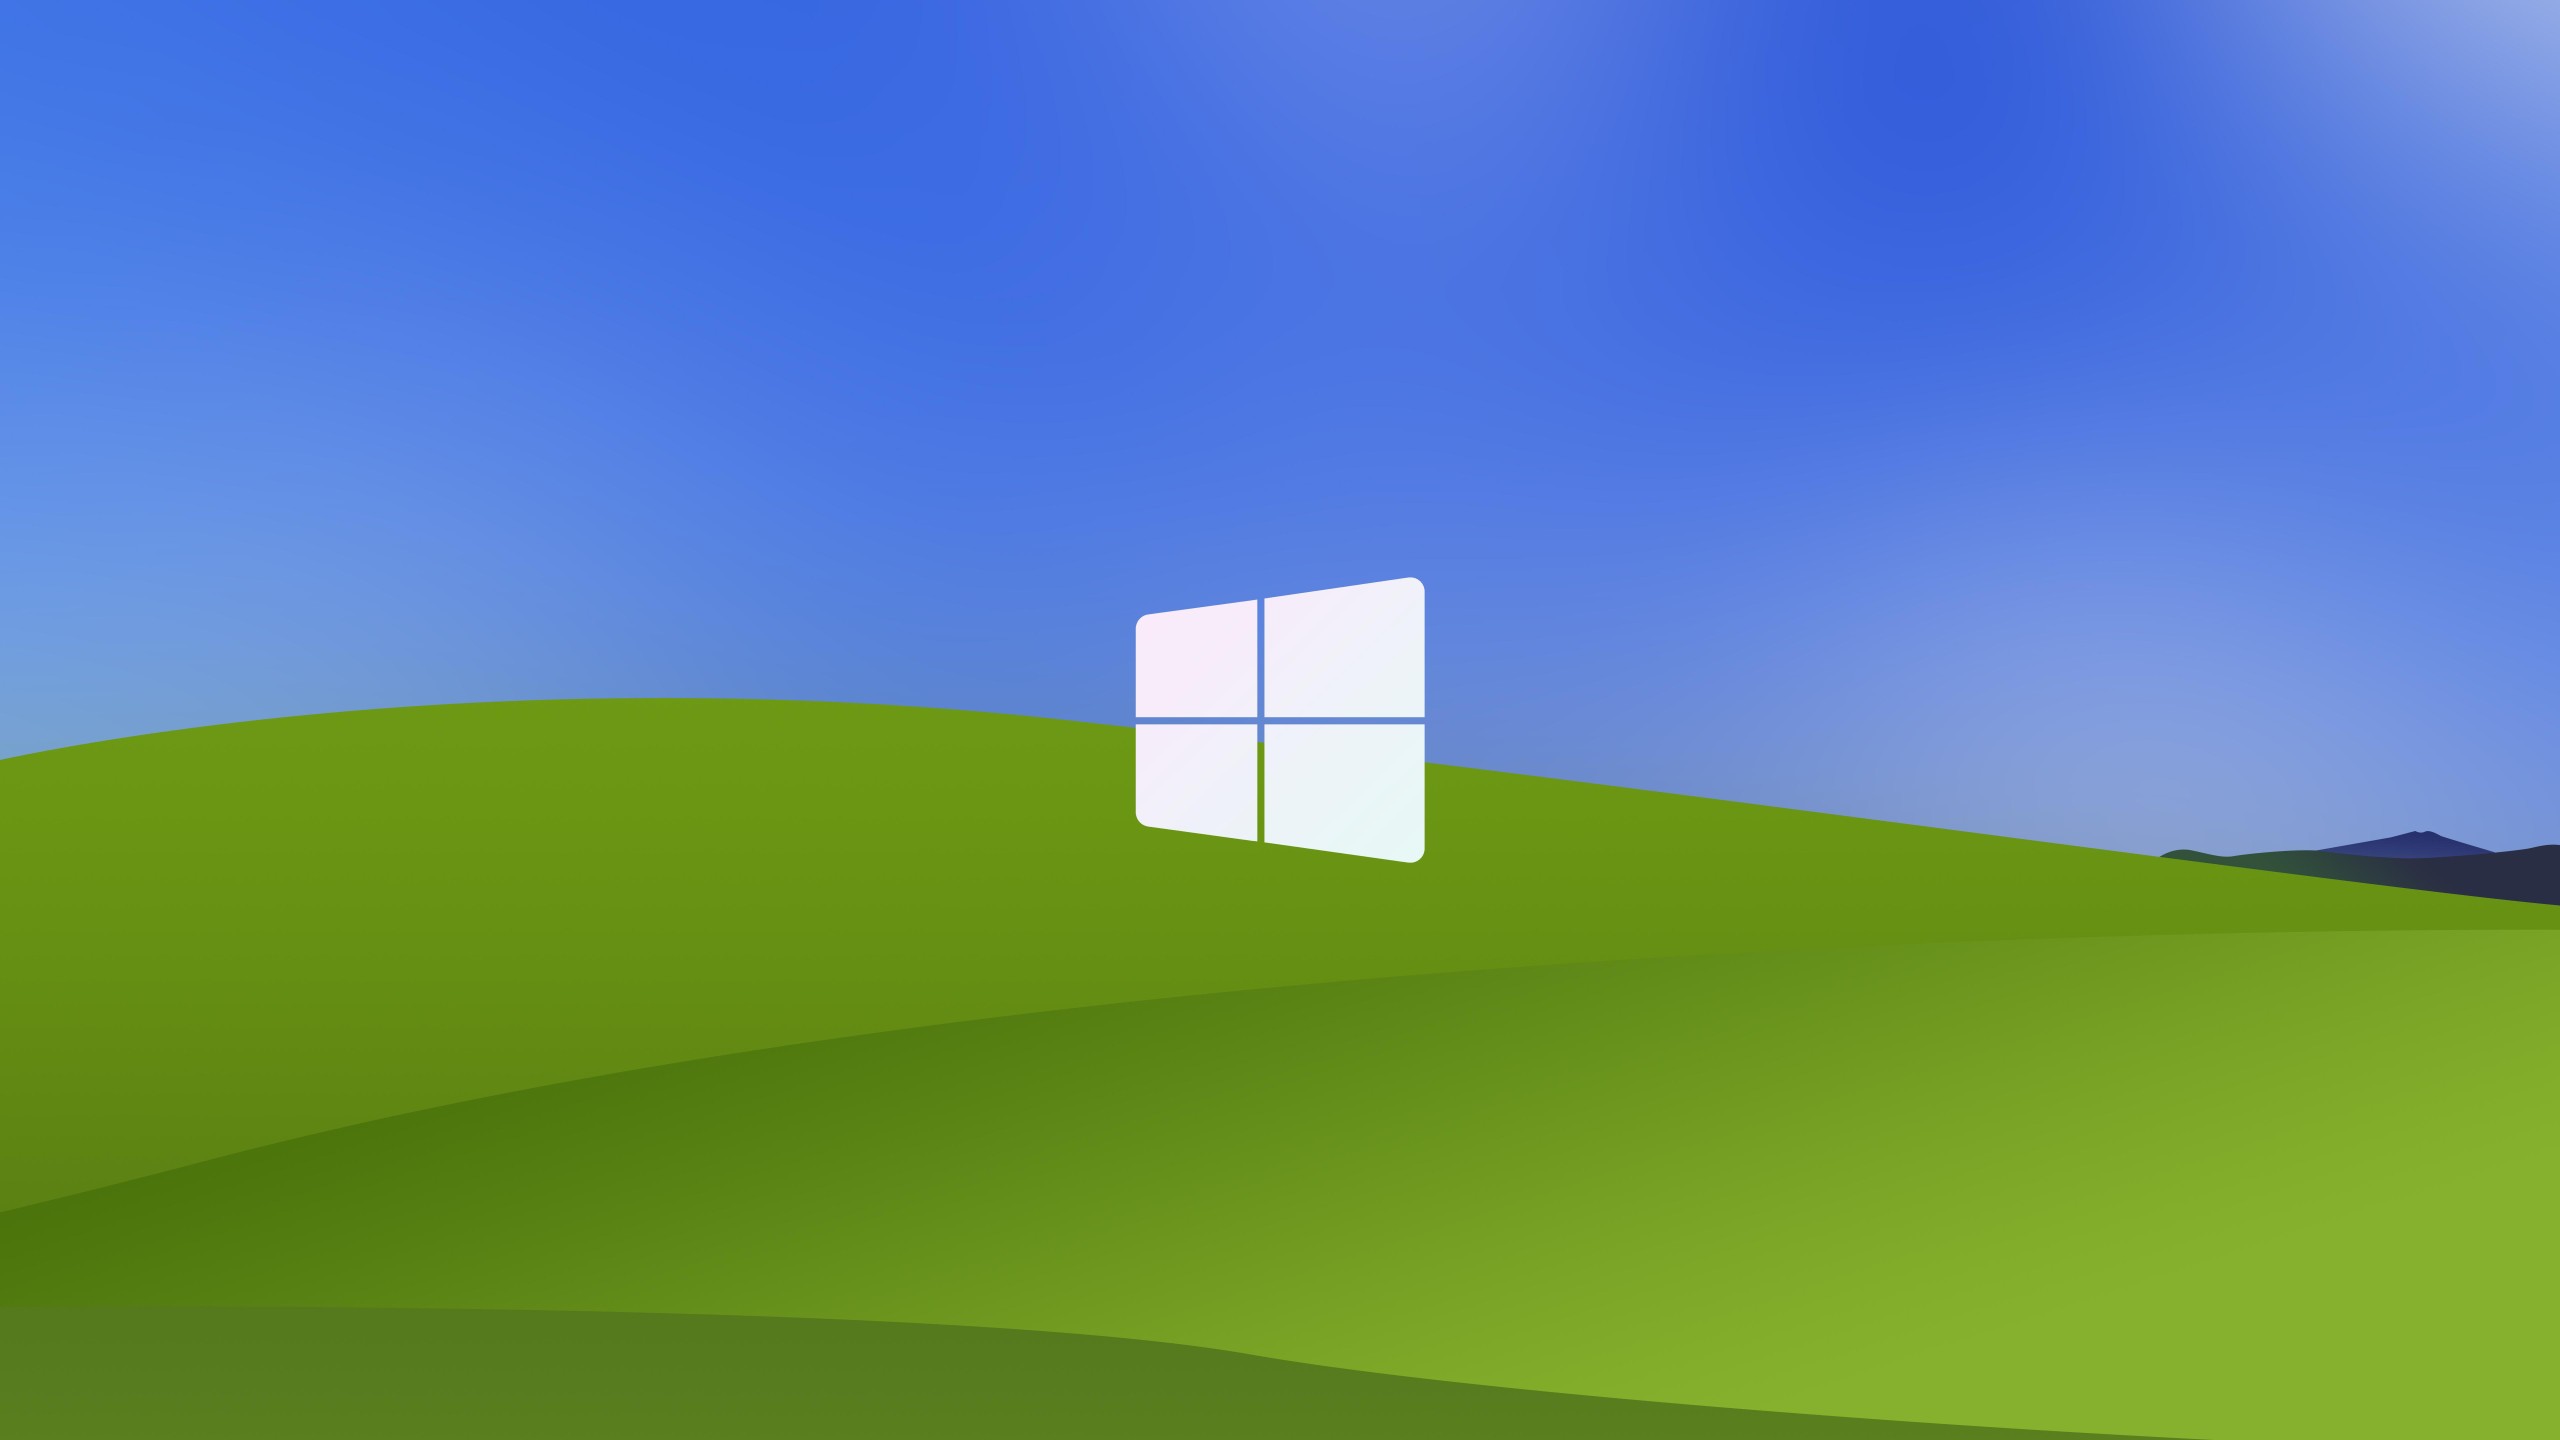 Hình nền Windows XP ngày mang đến cho bạn cảm giác tươi mới và sức sống trong các bức tranh nền đẹp mắt. Được thiết kế để sử dụng trên máy tính, chúng sẽ khiến cho bạn thấy thế giới bên ngoài của mình trở nên tràn đầy màu sắc và đầy sức sống. Tìm hiểu bộ sưu tập bằng cách nhấn vào hình ảnh liên quan và tạo ra cái nhìn mới cho màn hình của bạn.